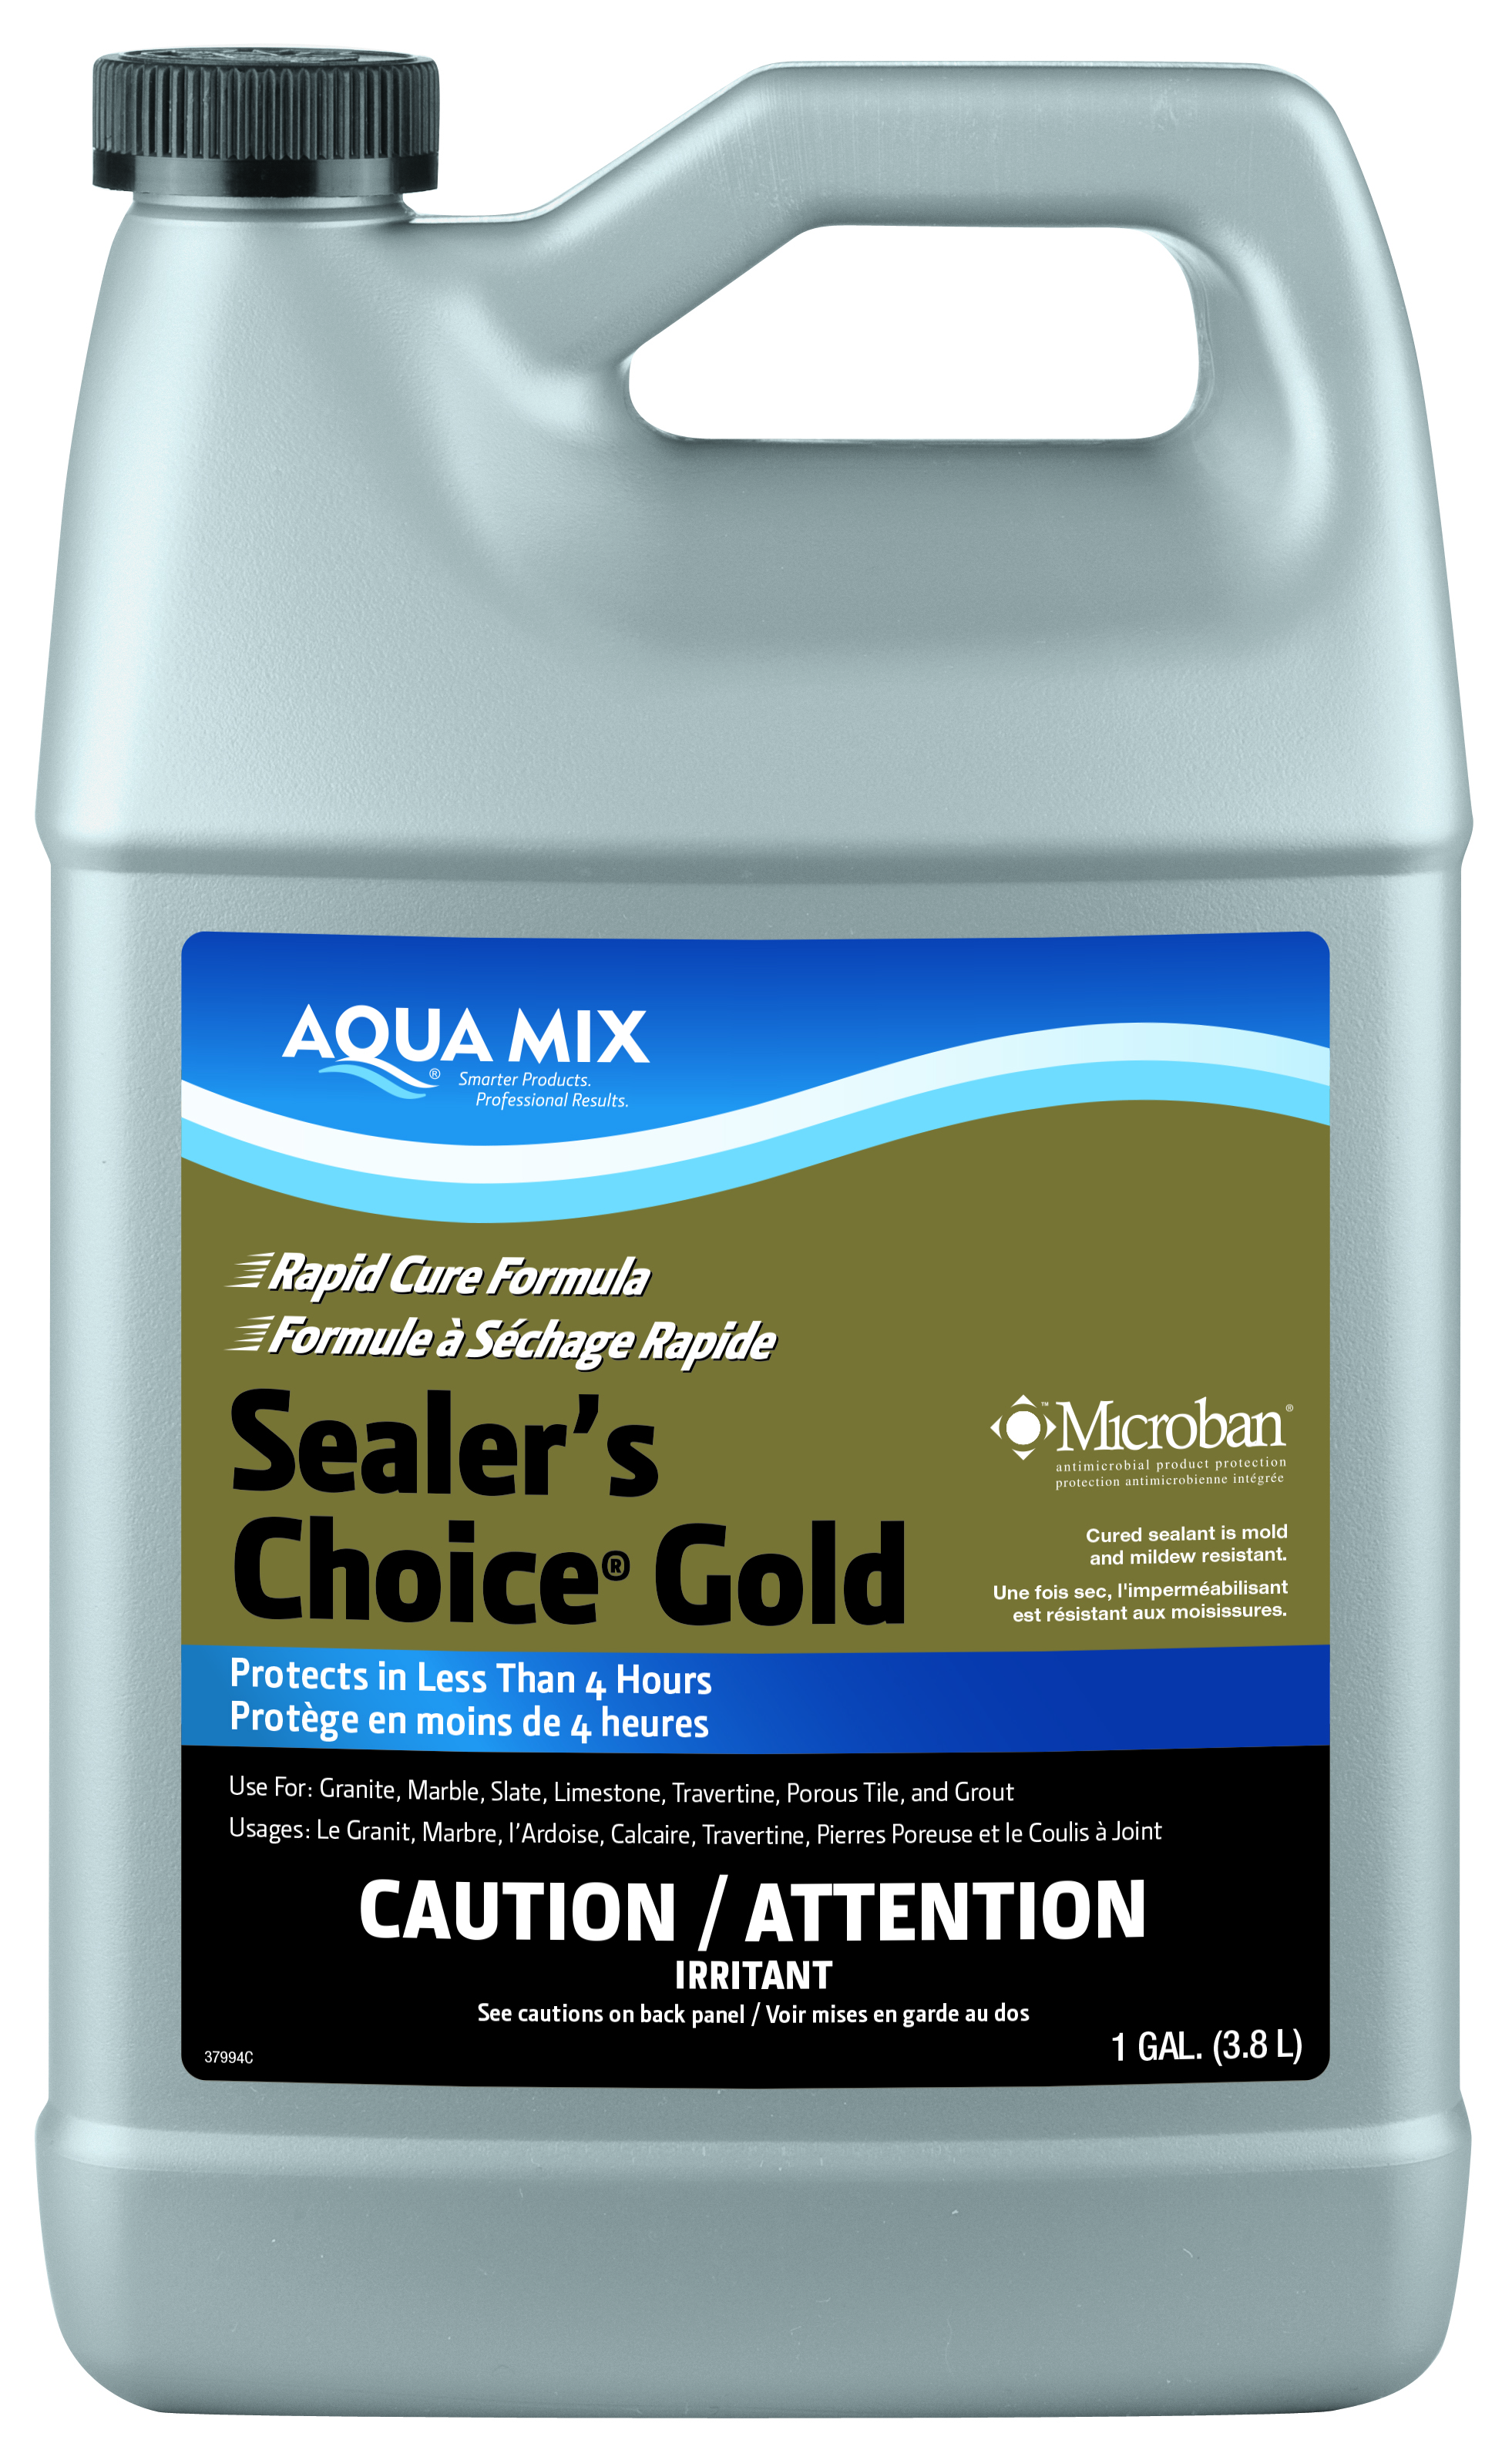 Aqua Mix (C030883) product